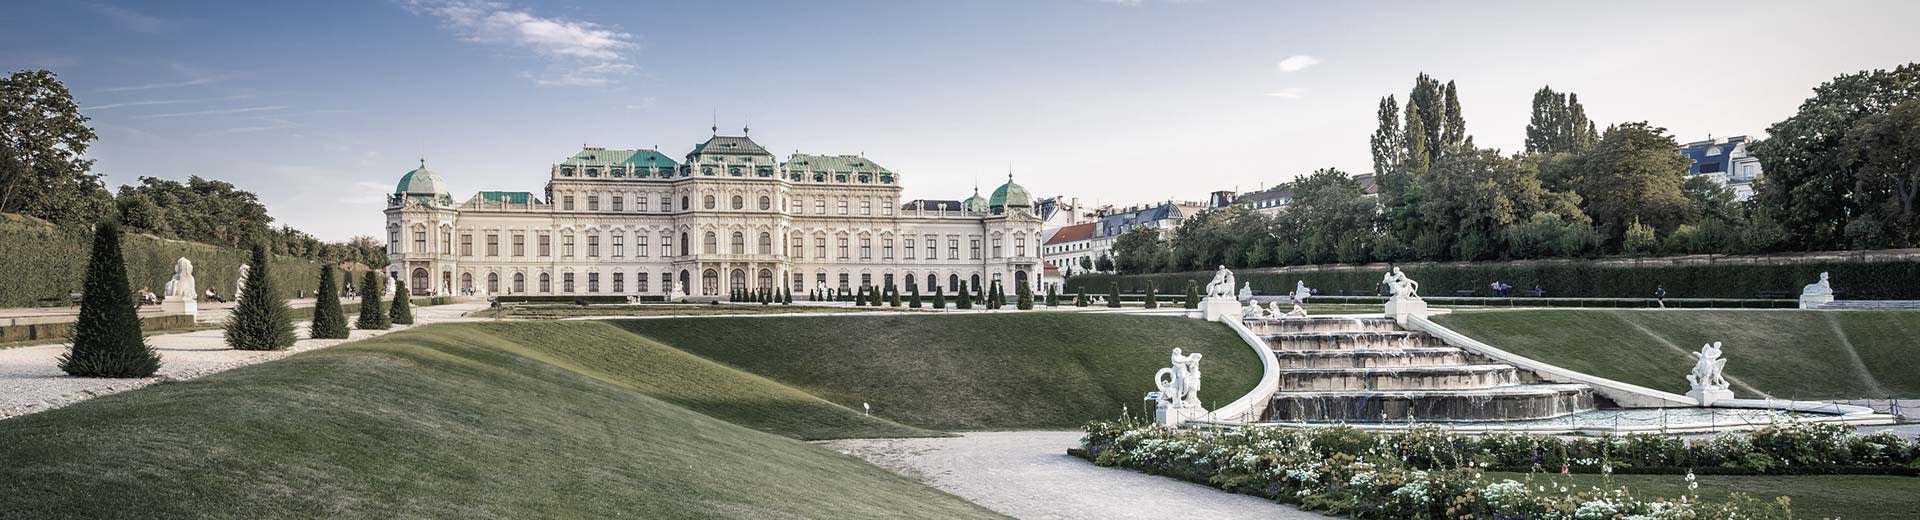 El mundialmente famoso Palacio de Schönbrunn se encuentra entre sus céspedes incediblemente cuidados en un día hermoso y claro.